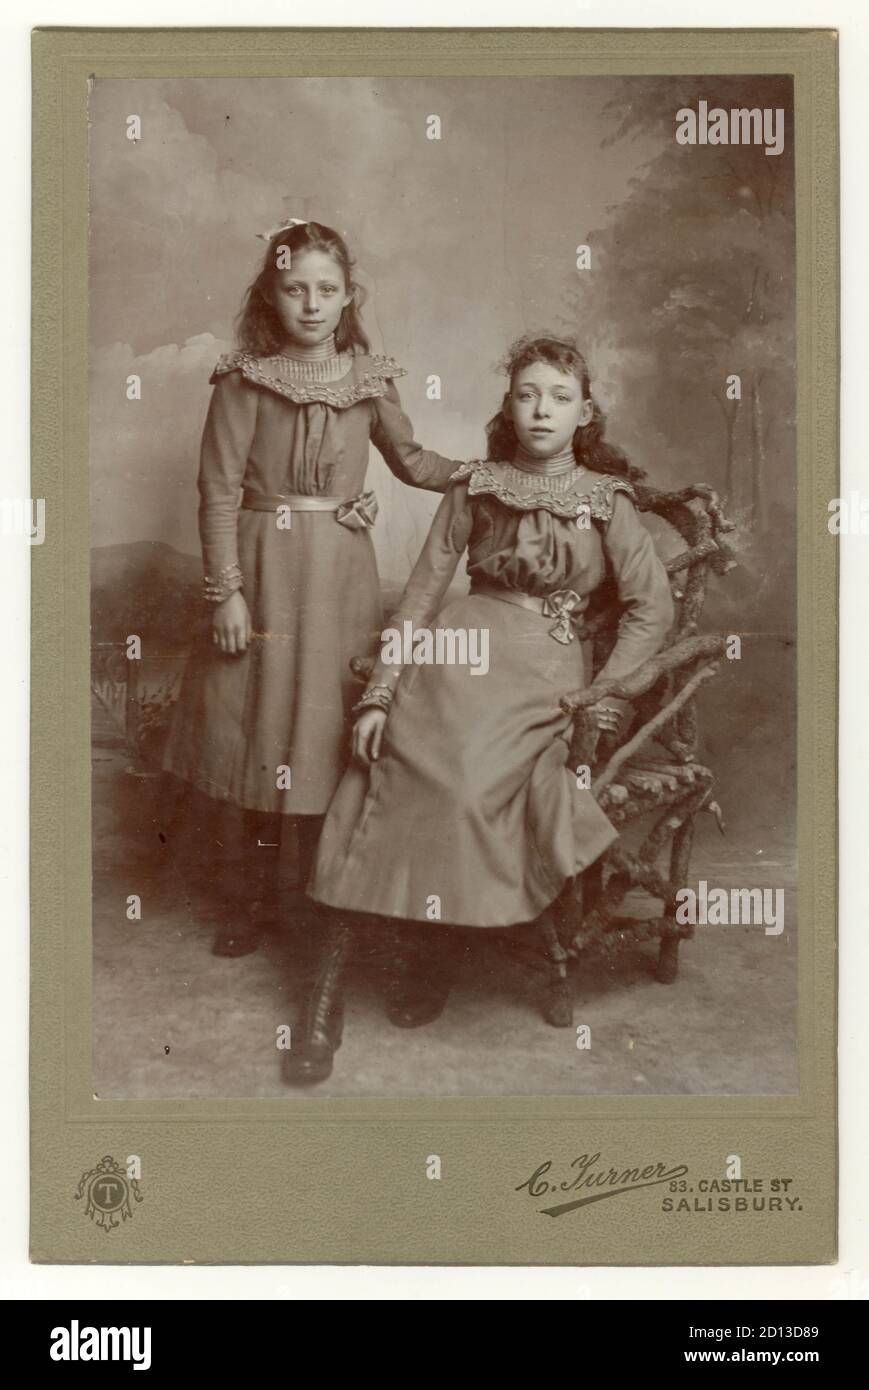 Portrait de deux jolies jeunes filles édouardiennes, fille édouardienne, probablement sœurs - des années late1890 au début des années 1900, Salisbury, Wiltshire, Angleterre, Royaume-Uni Banque D'Images